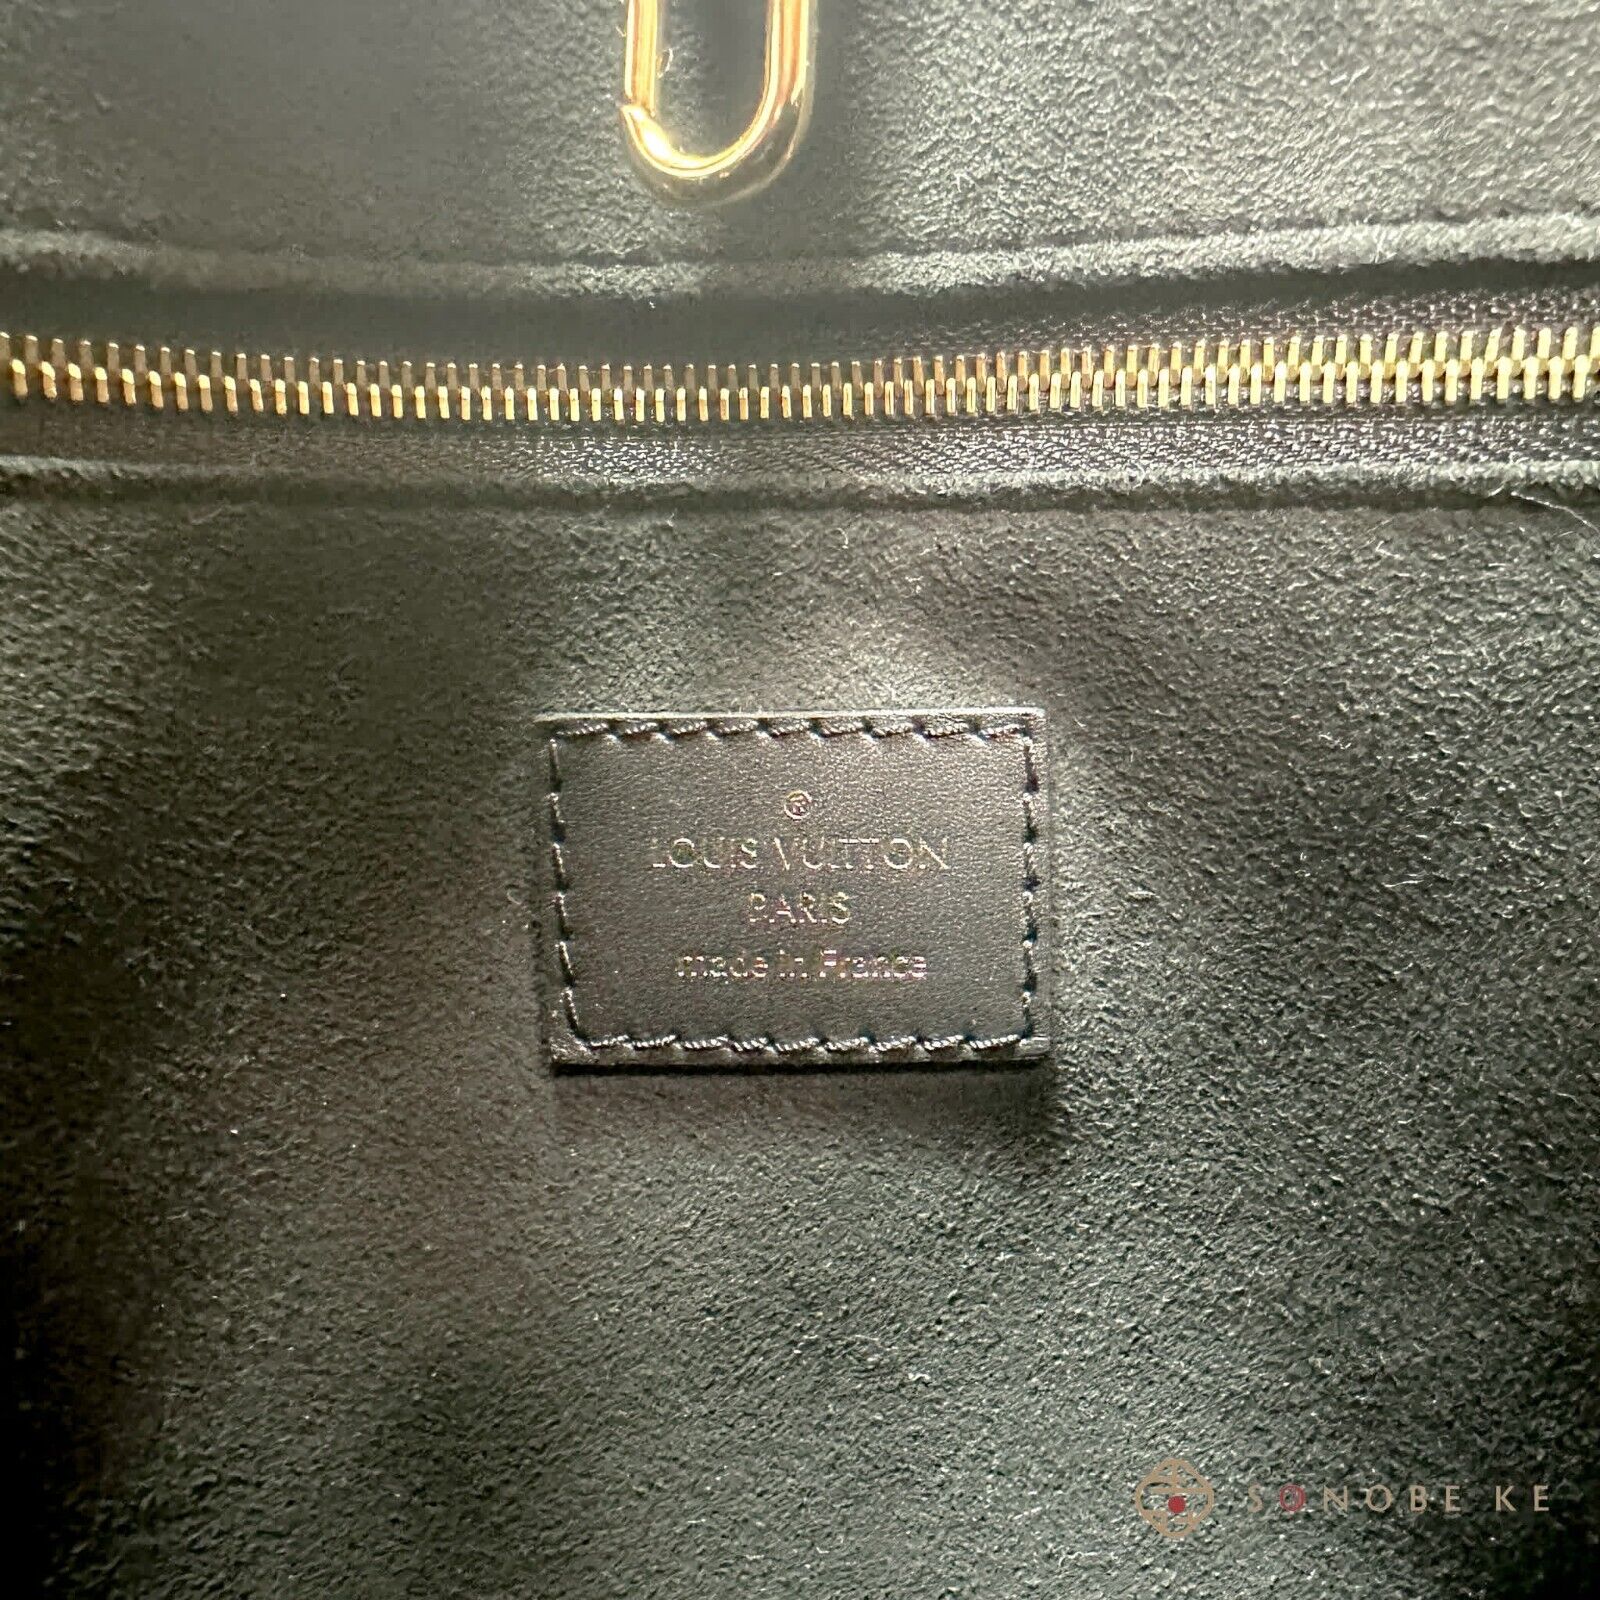 Louis Vuitton M46263 Sac Plat PM , Brown, One Size